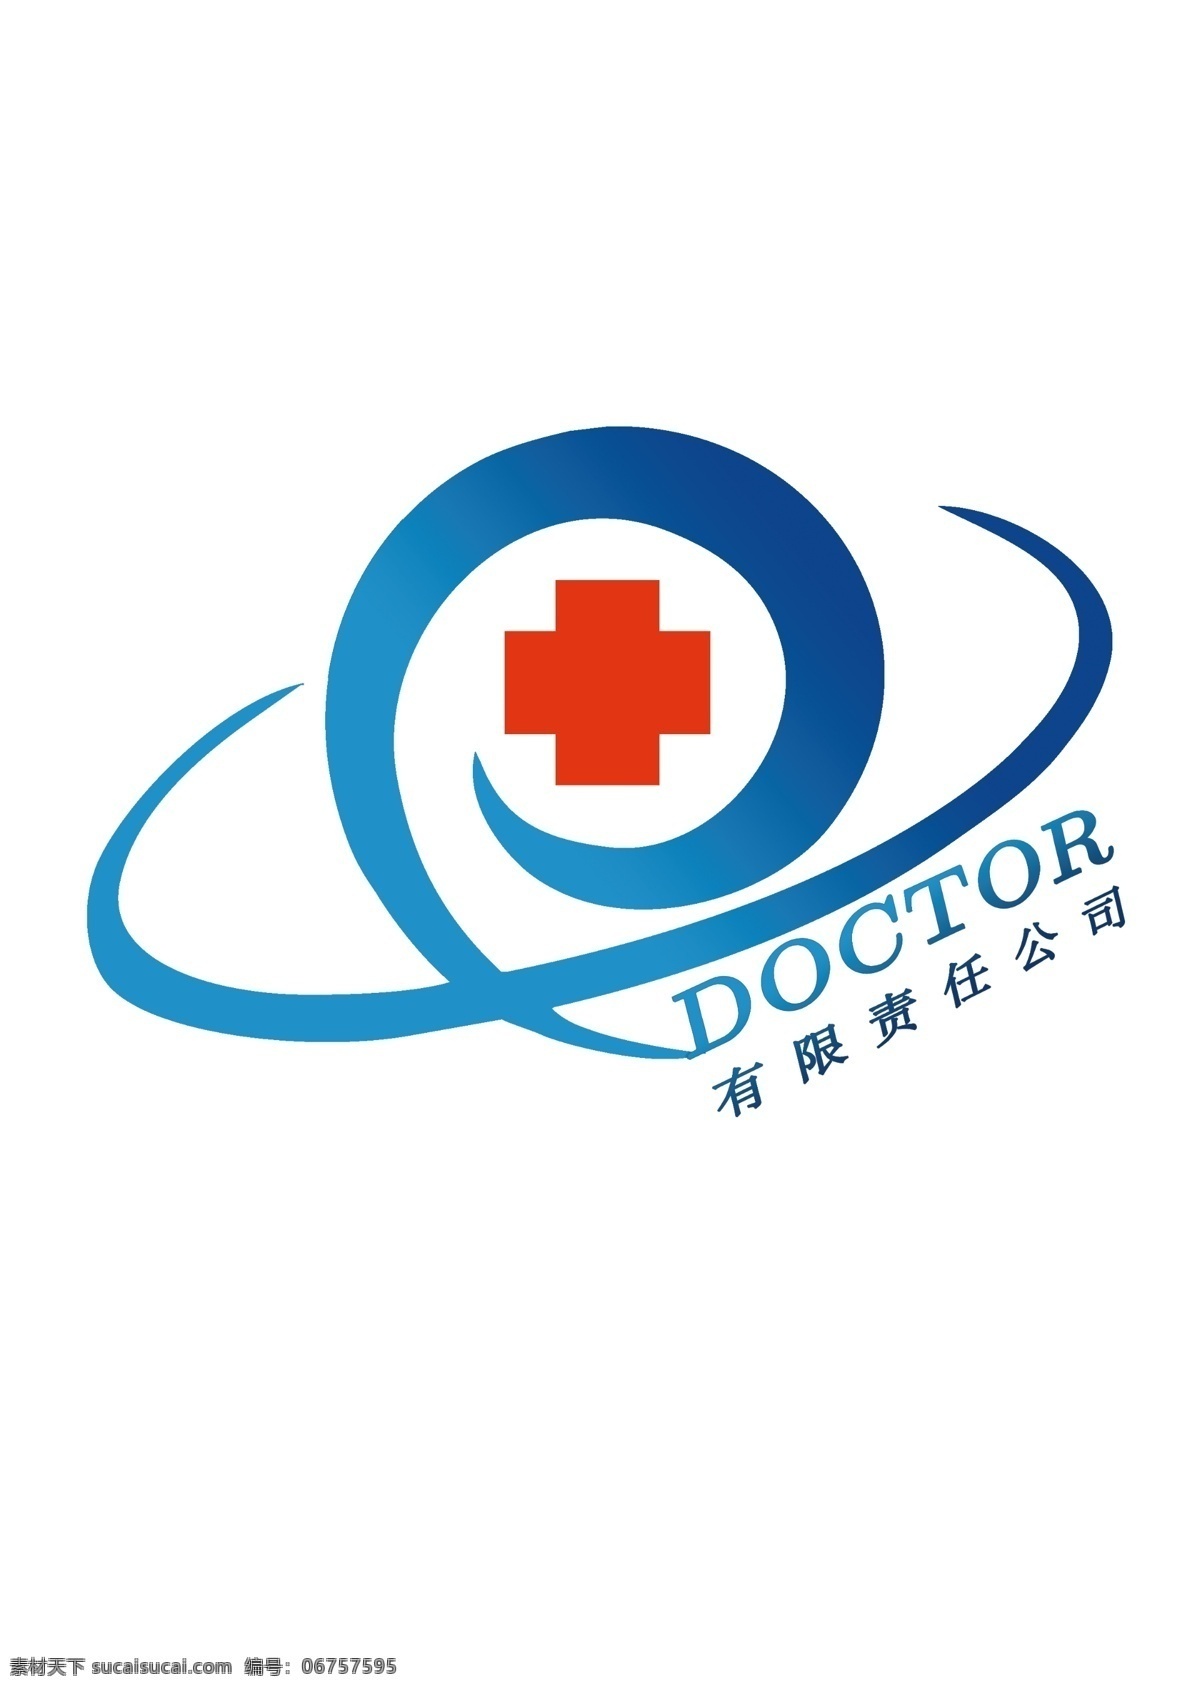 电子 医生 logo 科技 公司 比赛 原创 标志图标 企业 标志